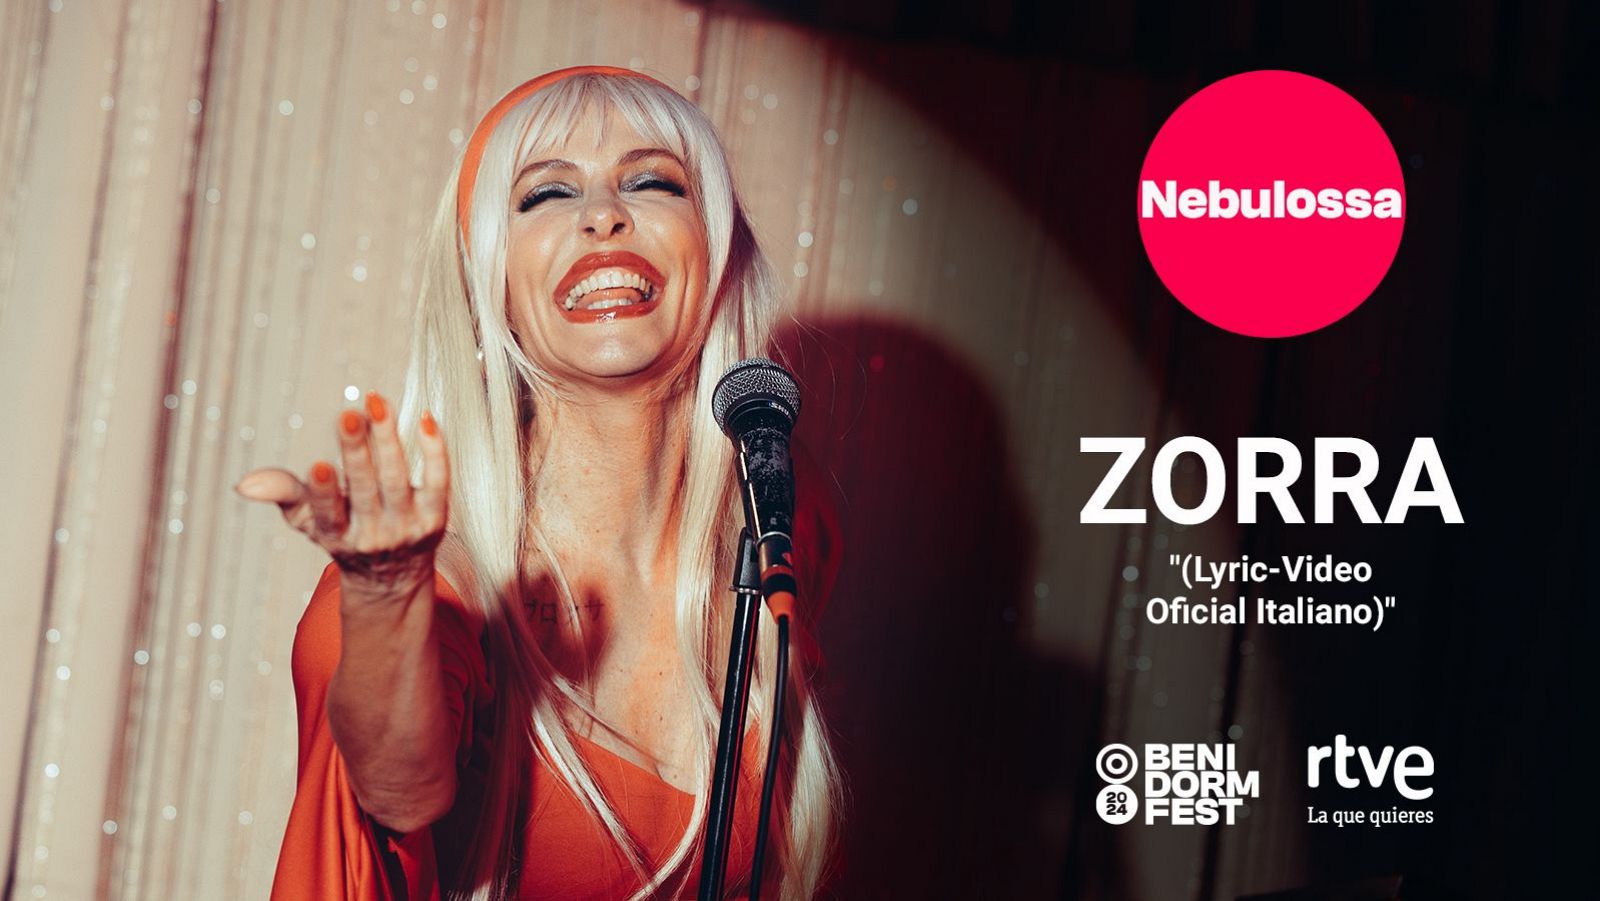 Eurovisión 2024 | "Zorra" de Nebulossa, videoclip oficial (Traducción al italiano)